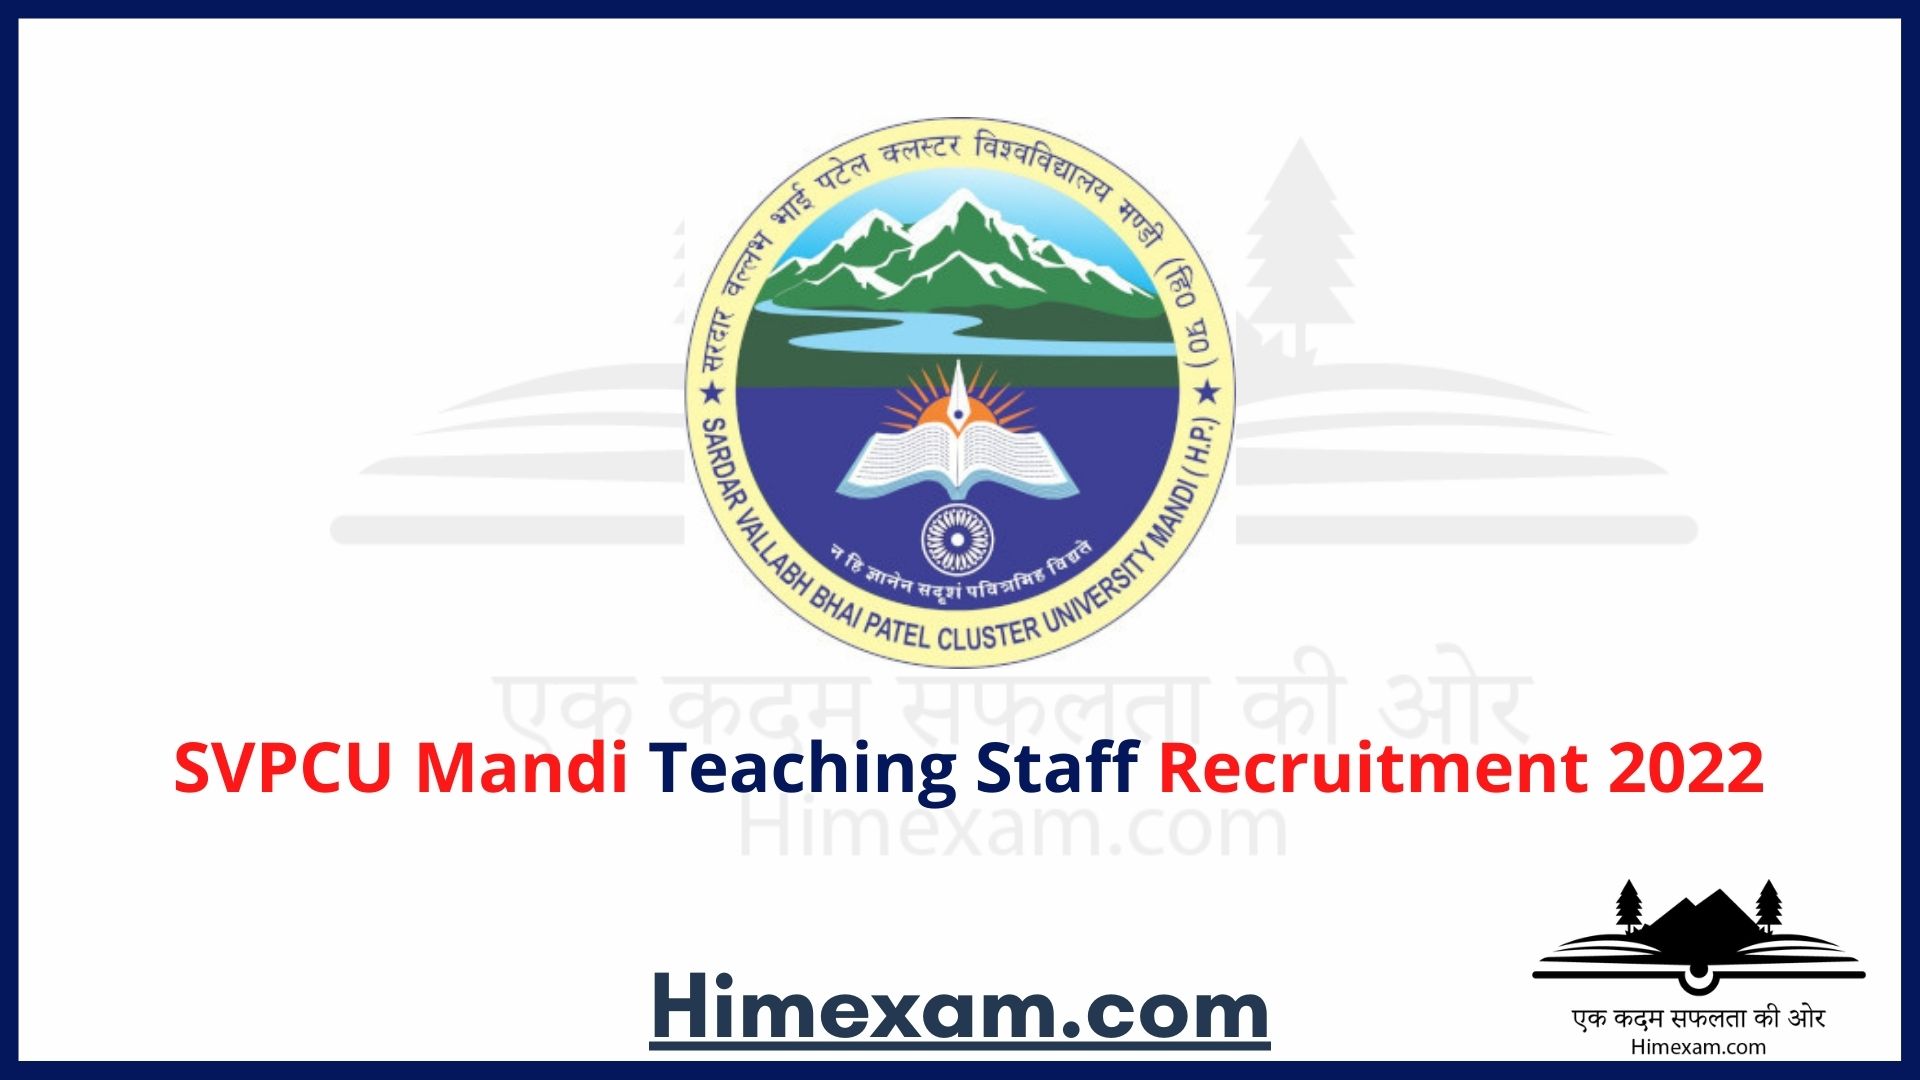 SVPCU Mandi Teaching Staff Recruitment 2022